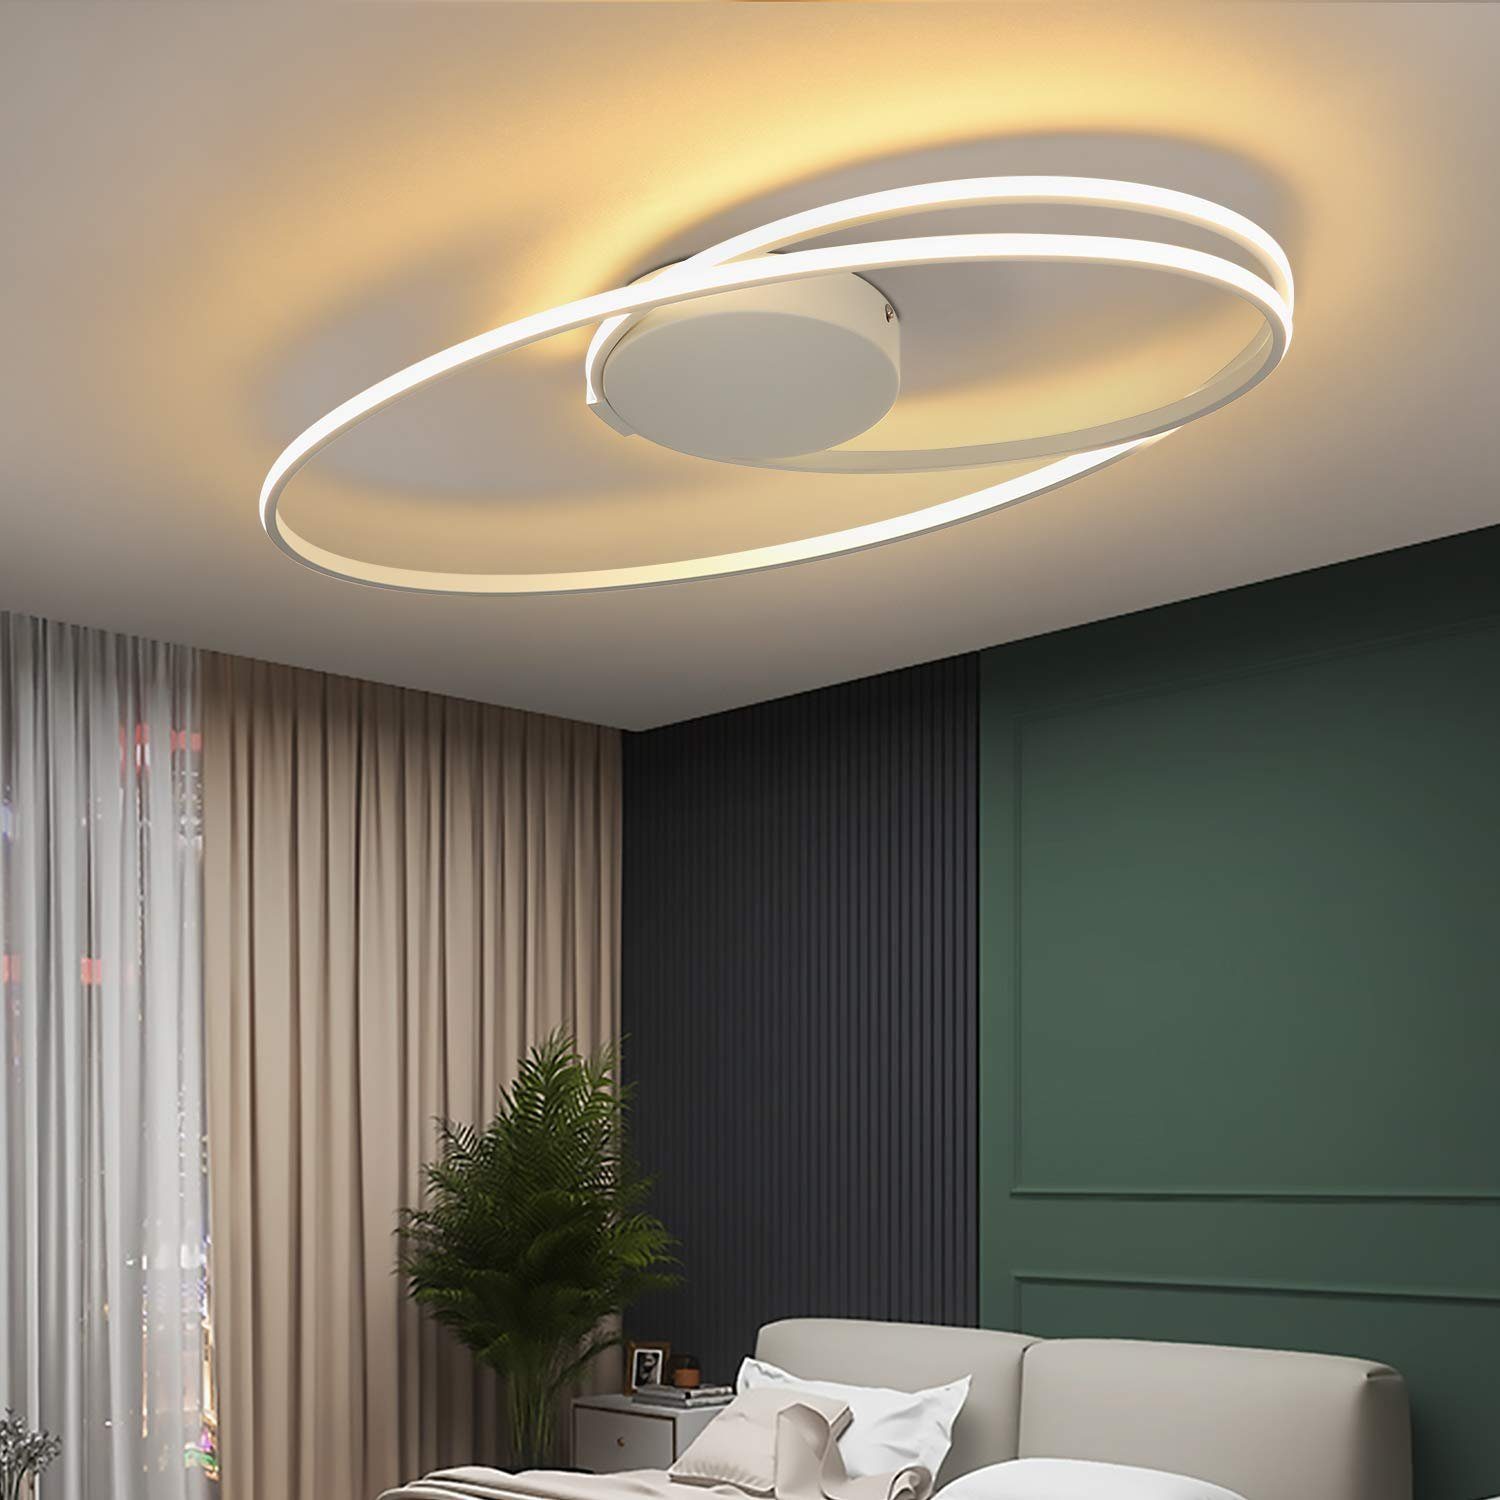 Design LED Decken Lampen gold Wohn Zimmer Leuchten Flur Strahler Deckenleuchte 